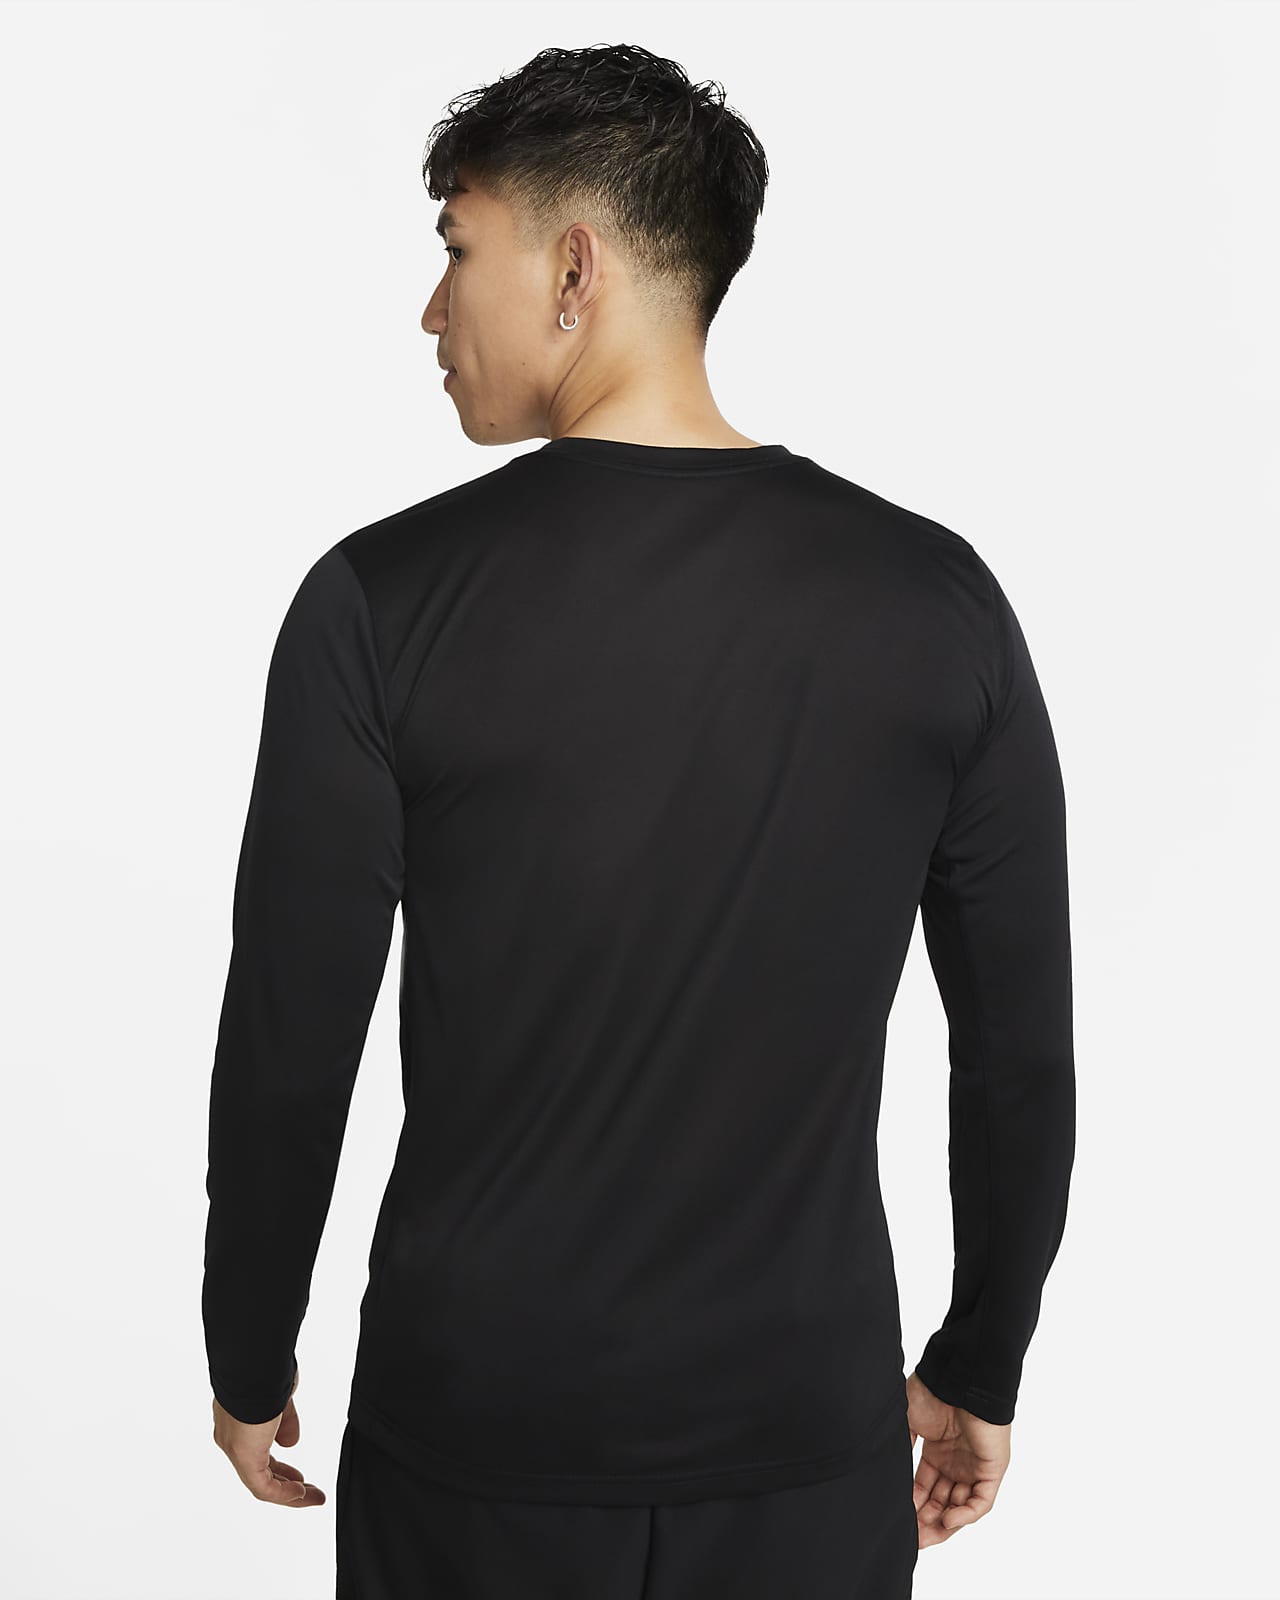 Nike Dri-FIT Men's Long-Sleeve Training T-Shirt. Nike PH